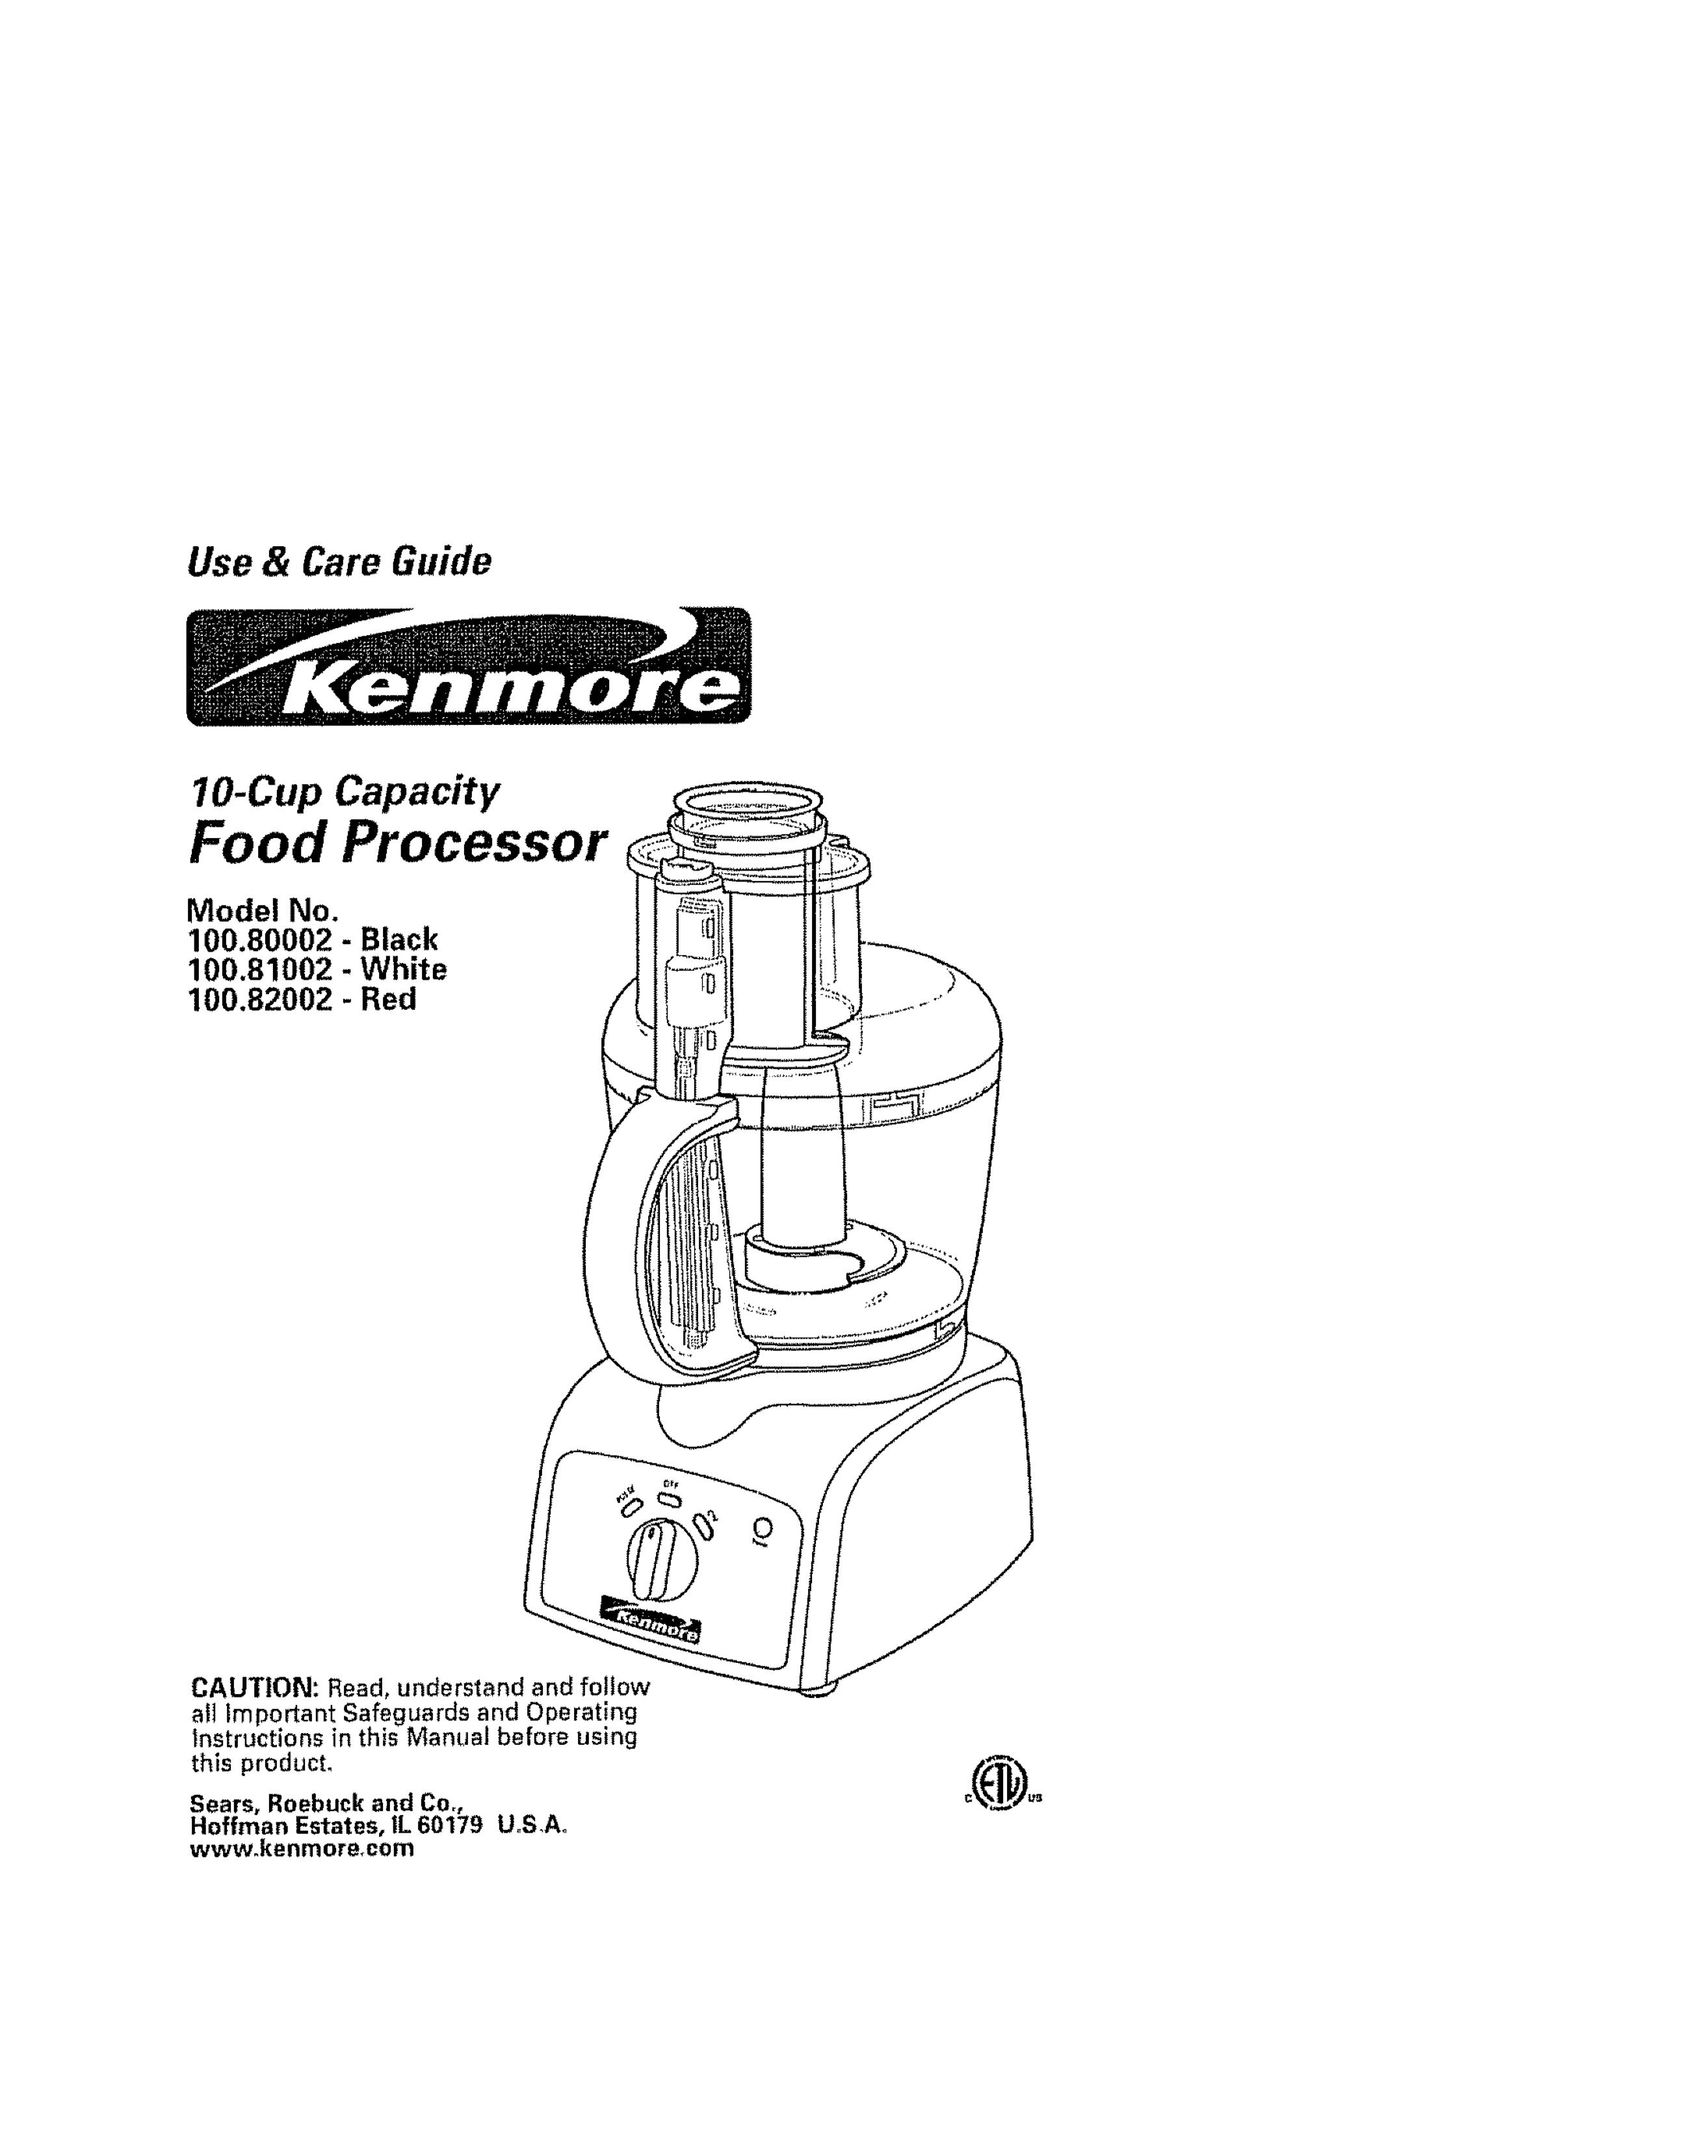 Kenmore 100.81002 Food Processor User Manual